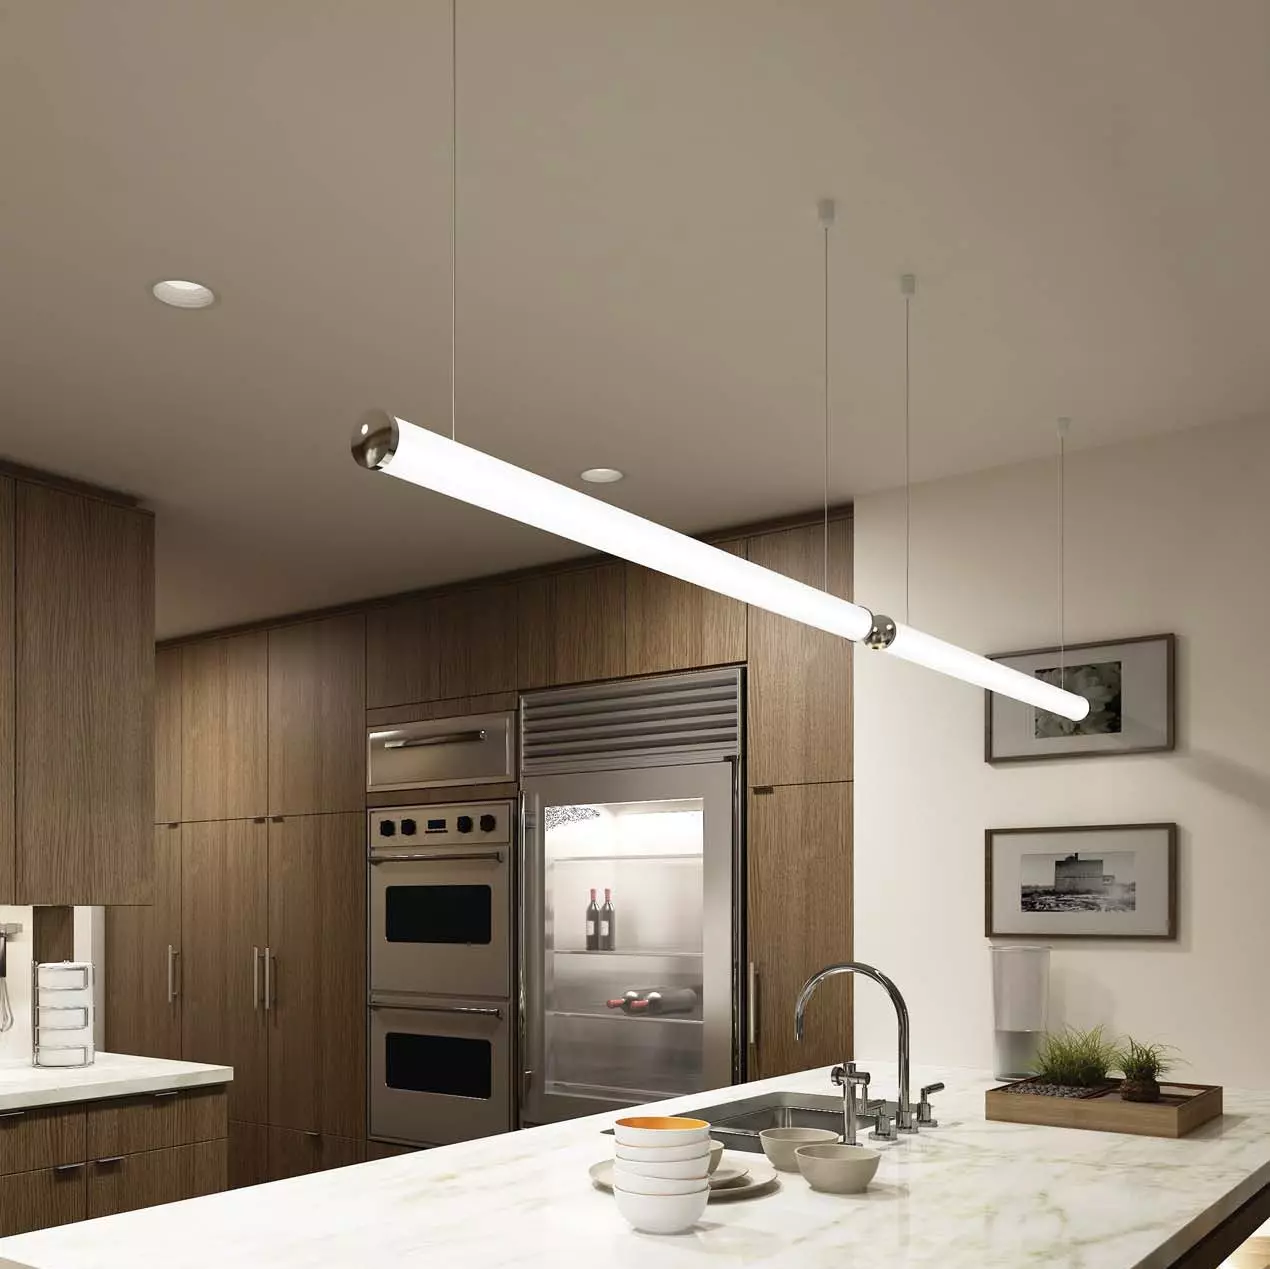 Խոհանոցային լամպեր (74 լուսանկար). Խոհանոցային Sconce եւ պատի վրա տեղադրված սենսորային լամպեր, գլխավերեւում եւ հետեւի լամպեր եւ առաստաղներ, այլ տարբերակներ 21003_38